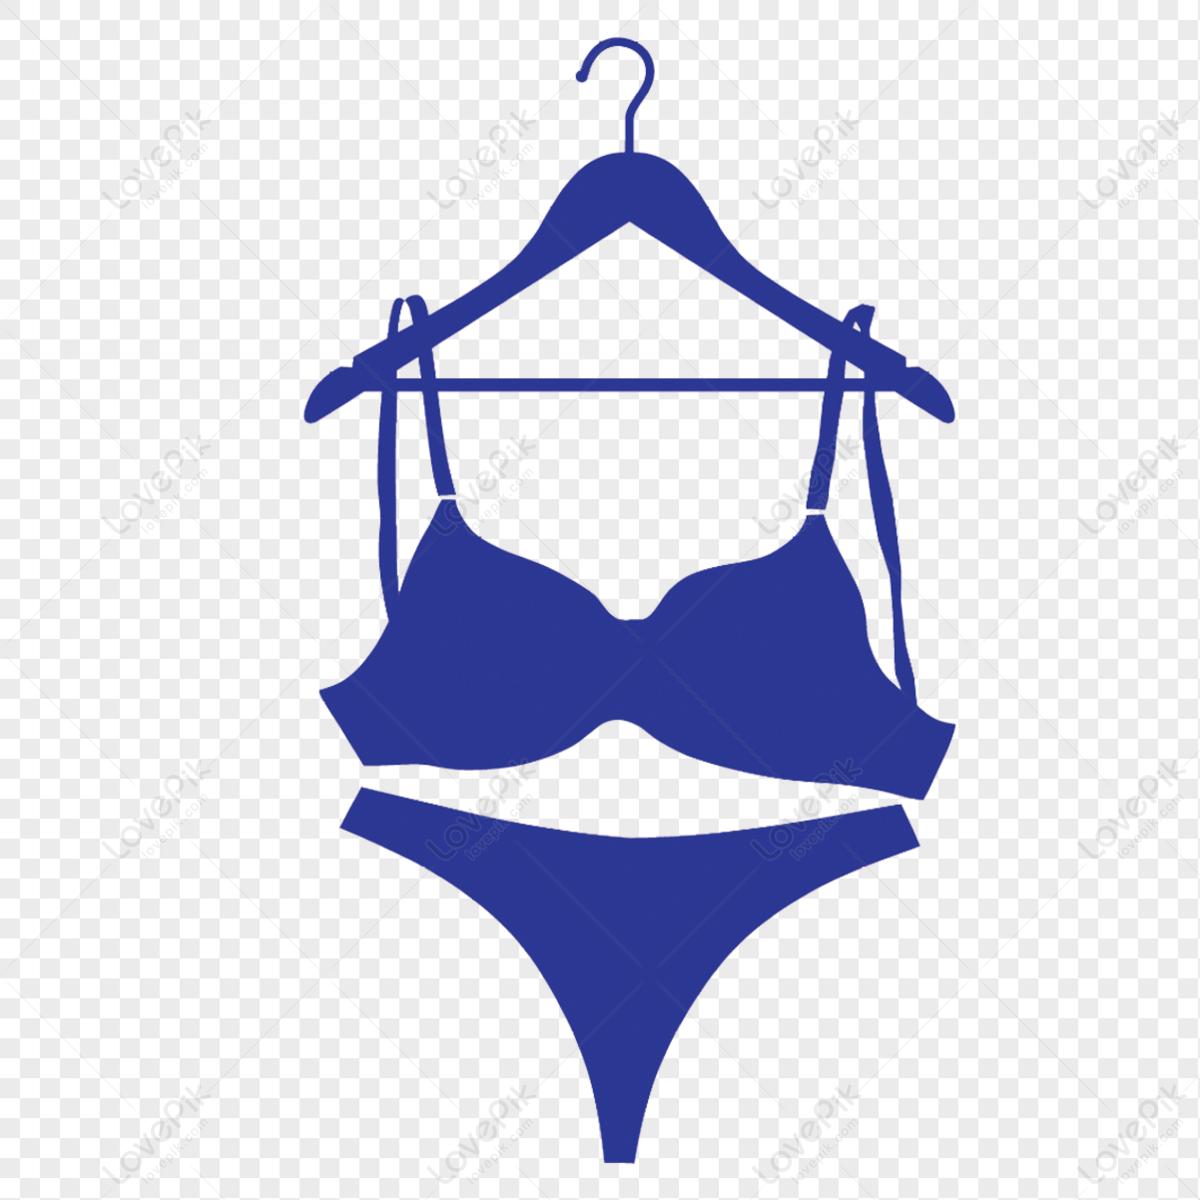 Girls Underwear White Transparent, Cartoon Hand Drawn Girl Underwear Panties  Material Icon, Hand Icons, Girl Icons, Cartoon Icons PNG Image For Free  Download